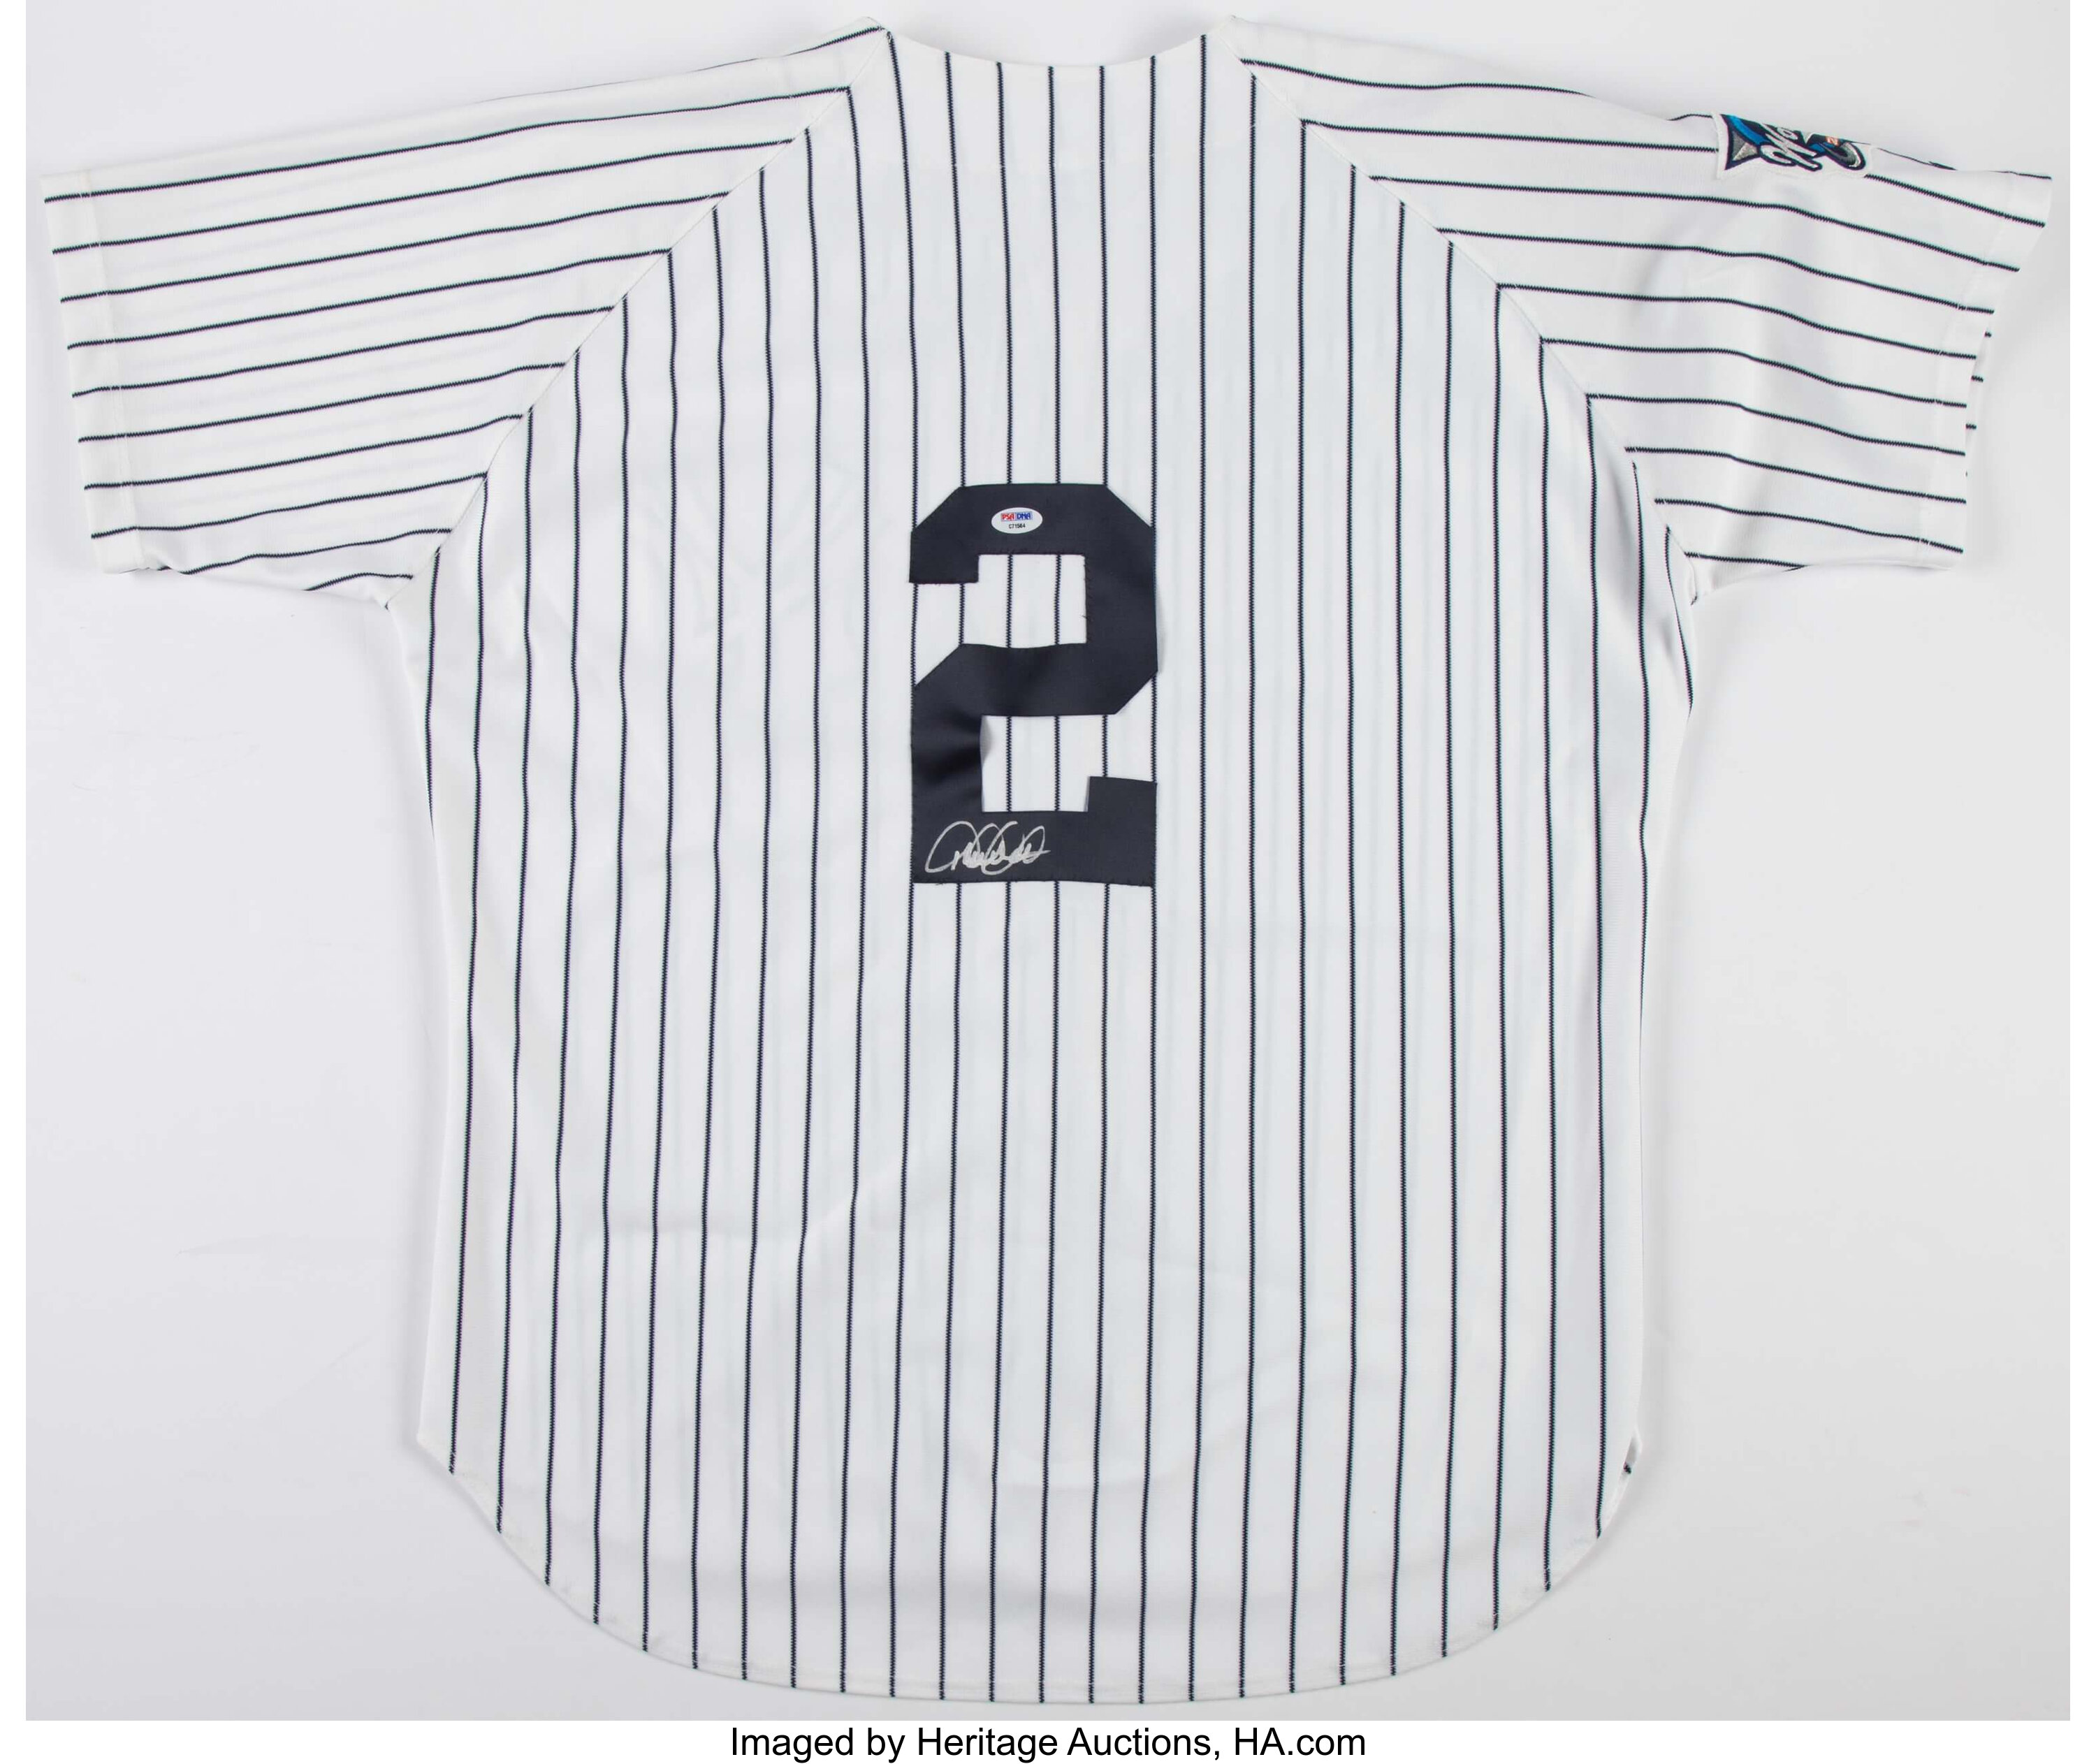 Derek Jeter Signed New York Yankees Jersey. Baseball